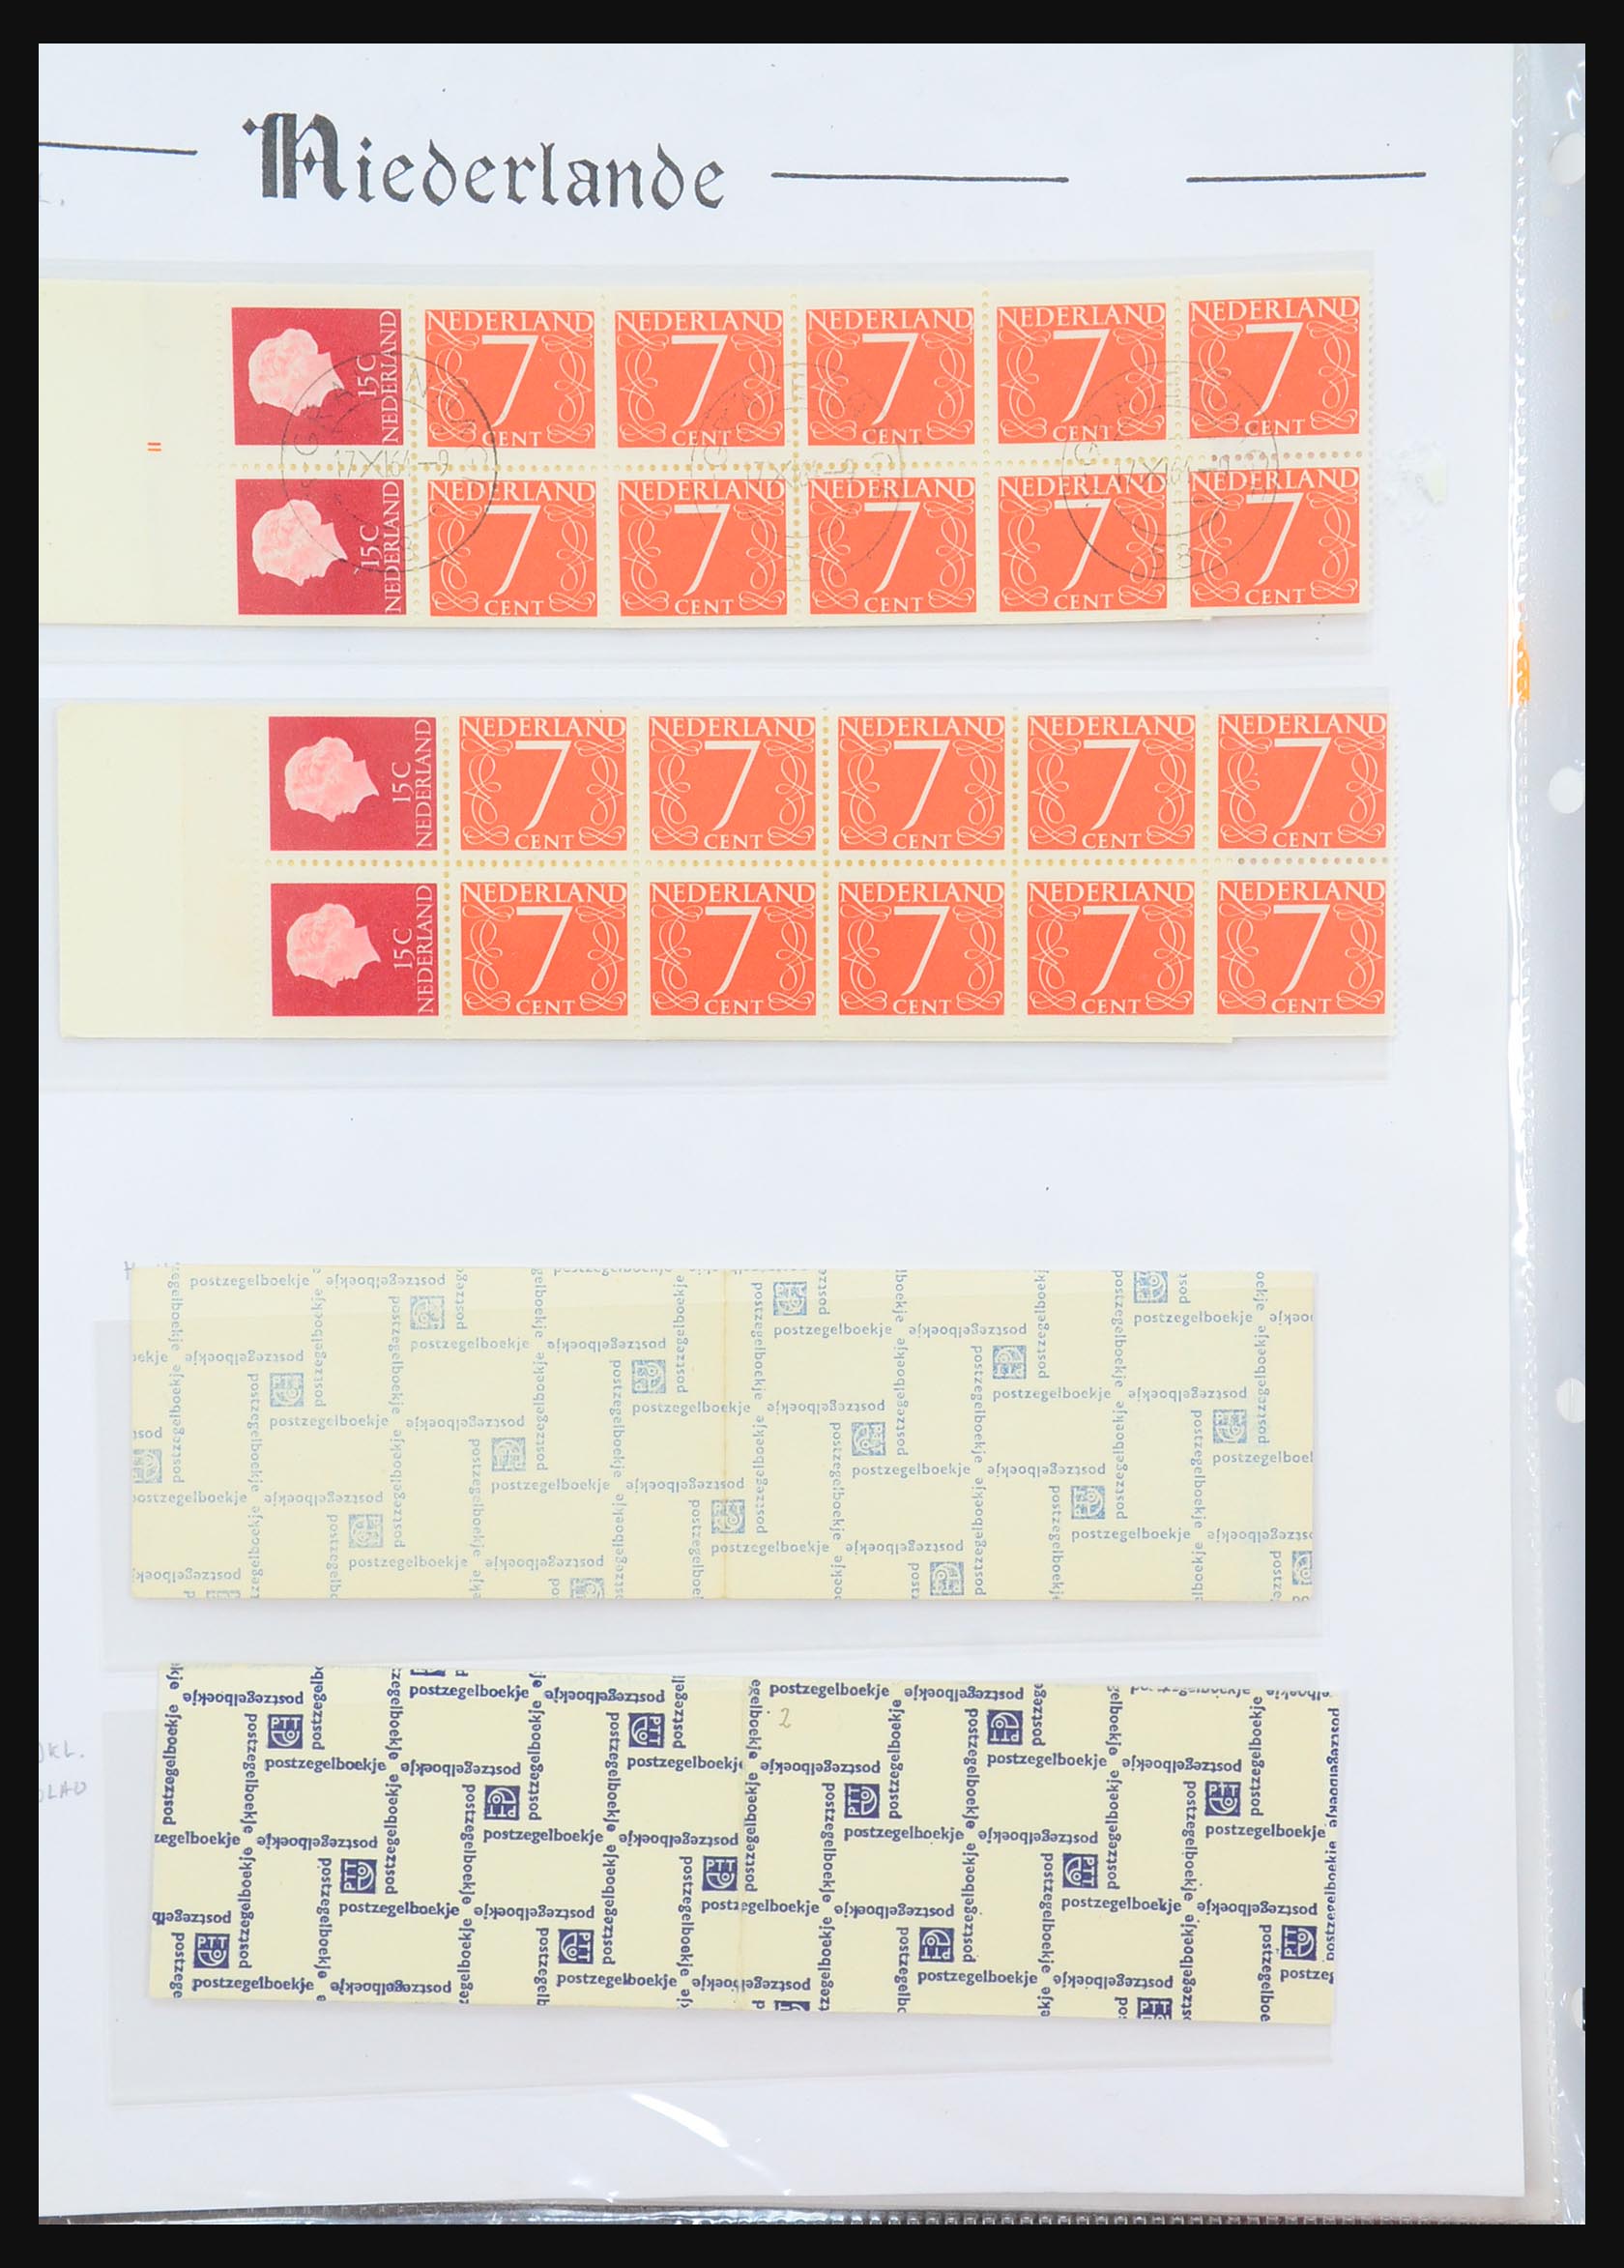 31311 002 - 31311 Netherlands stamp booklets 1964-1994.